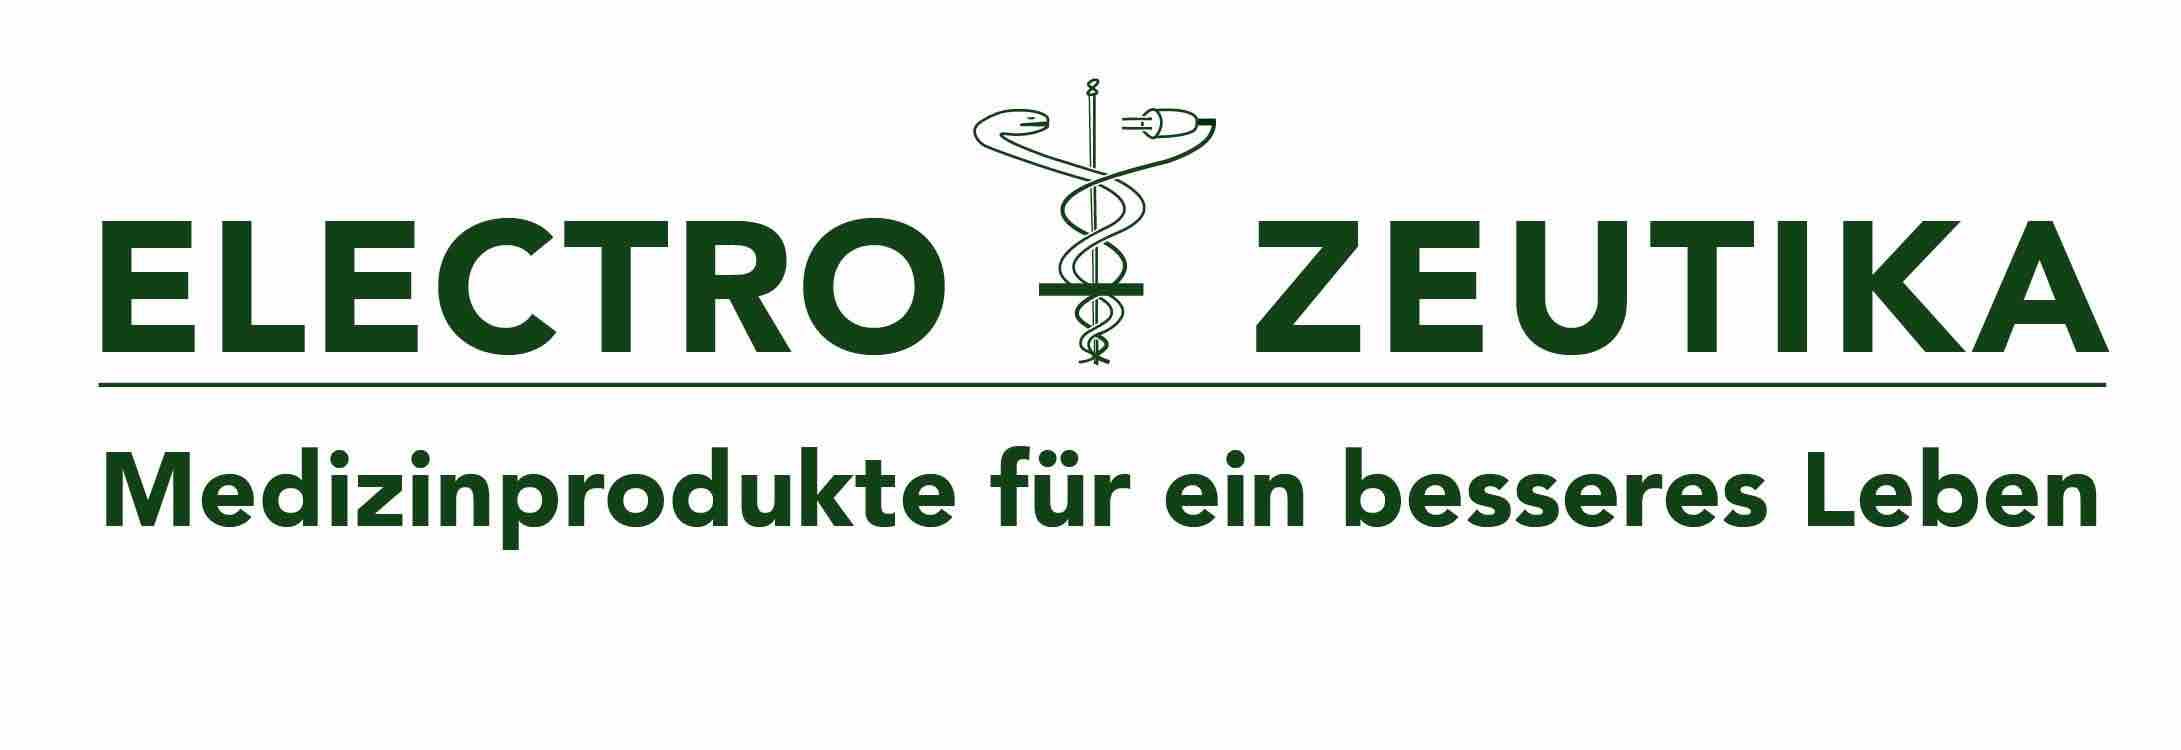 Electro-Zeutika GmbH